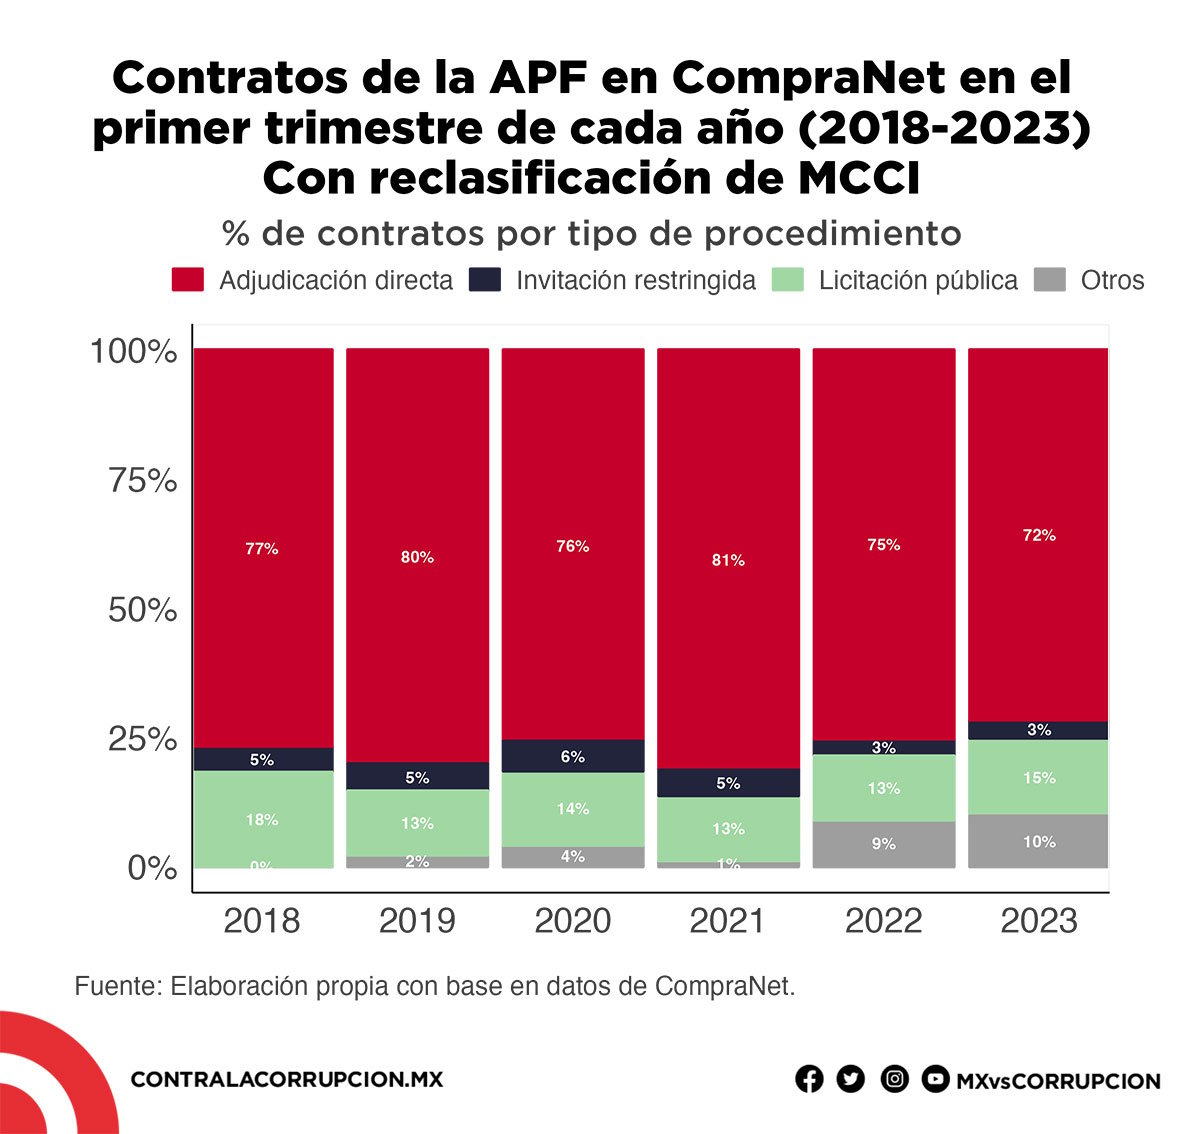 Contratos de la APF en CompraNet en el primer trimestre de cada año (2018-2023) con reclasificación de MCCI